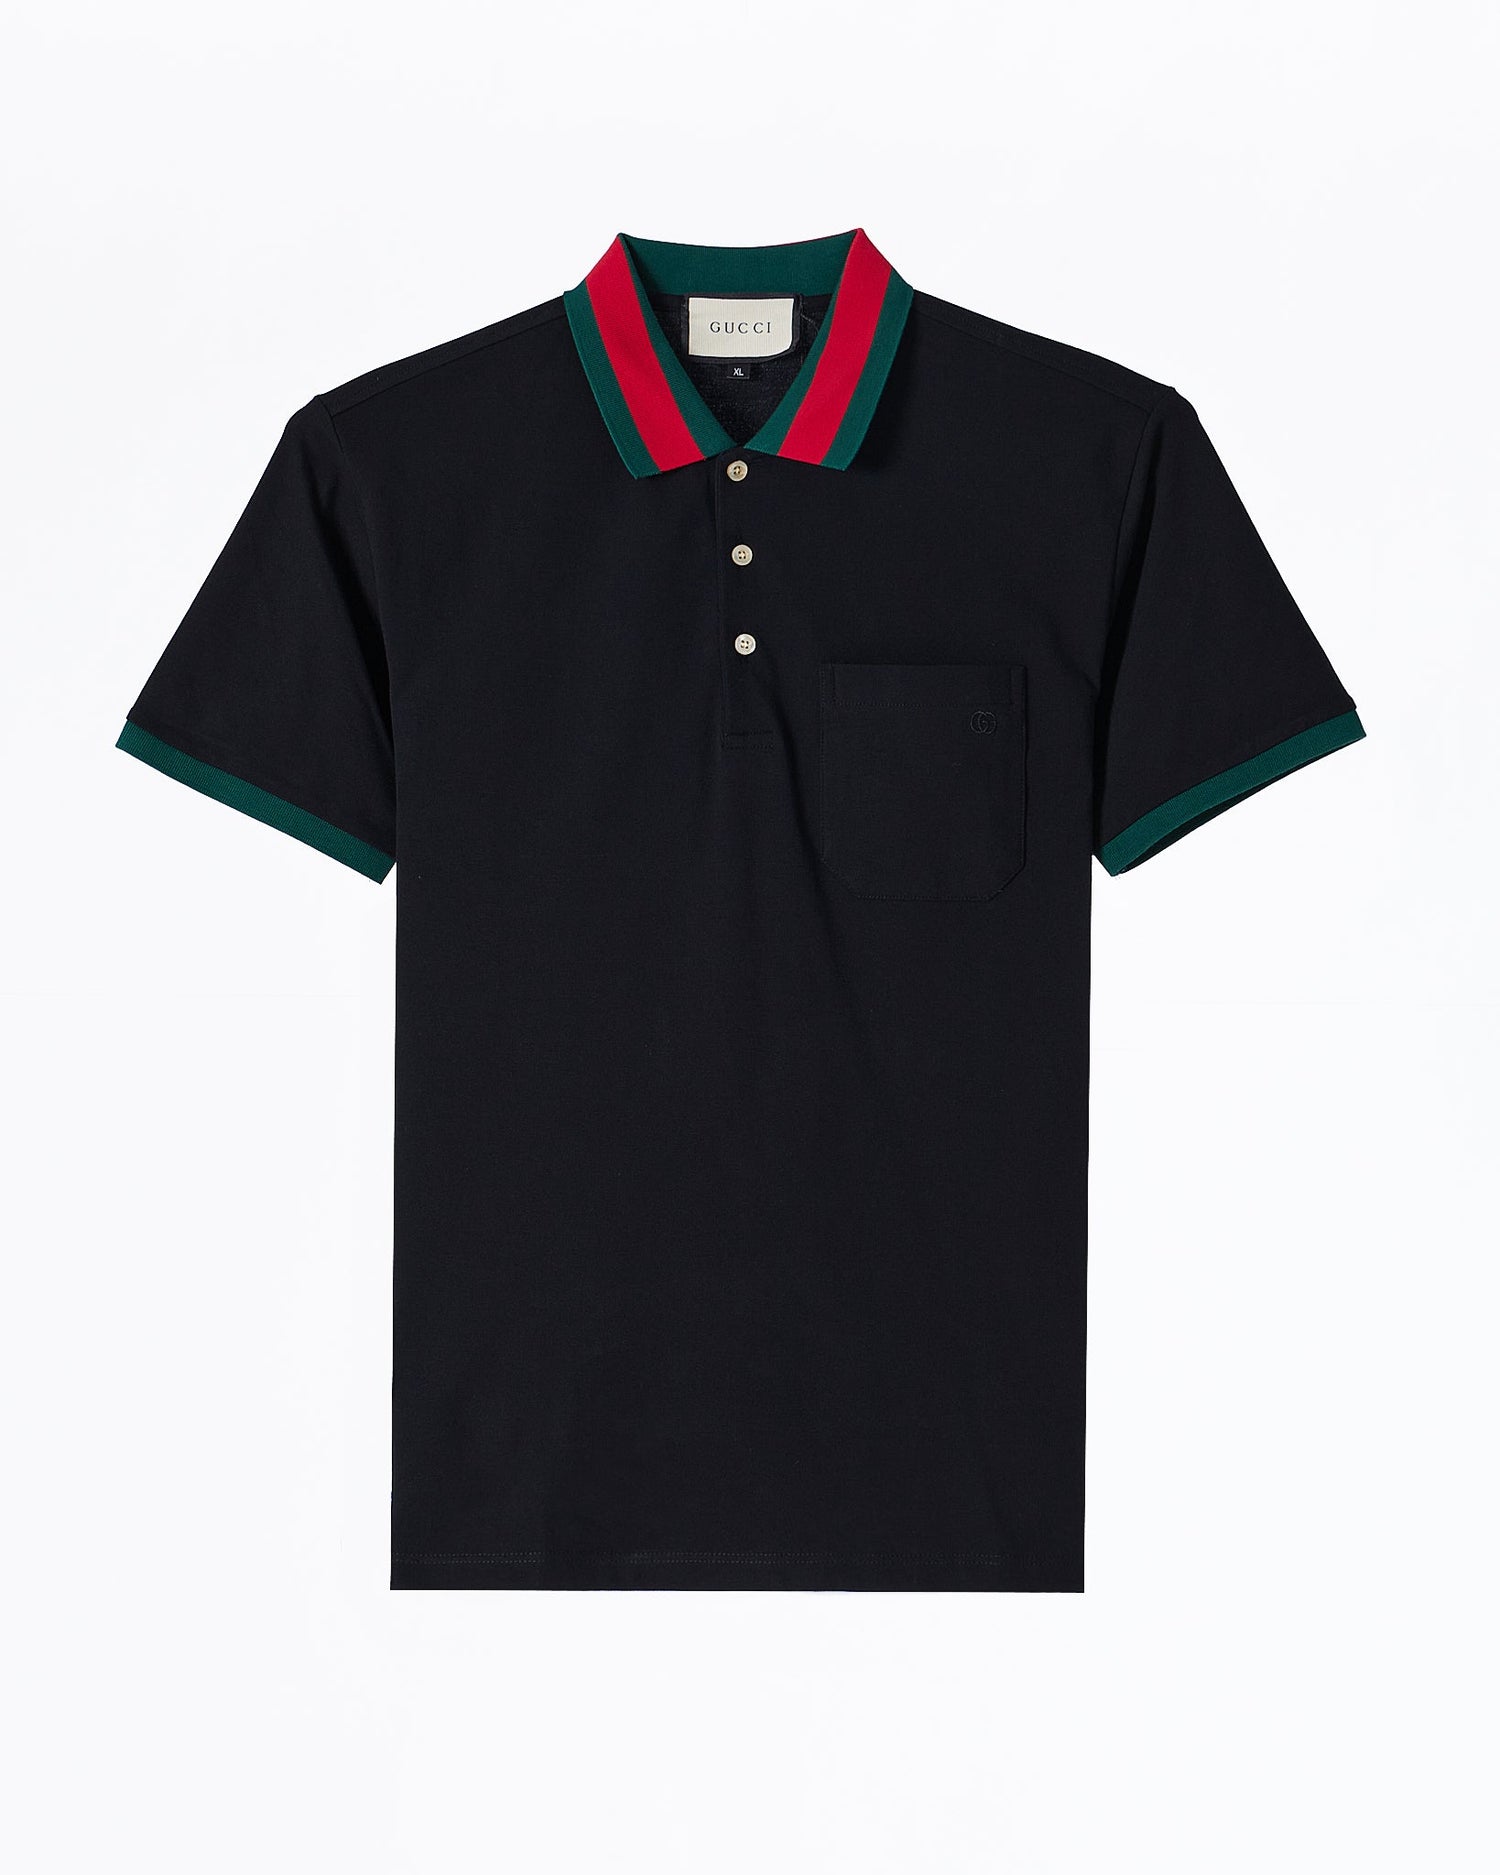 MOI OUTFIT-GUC Striped Collar Men Black Polo Shirt 64.90